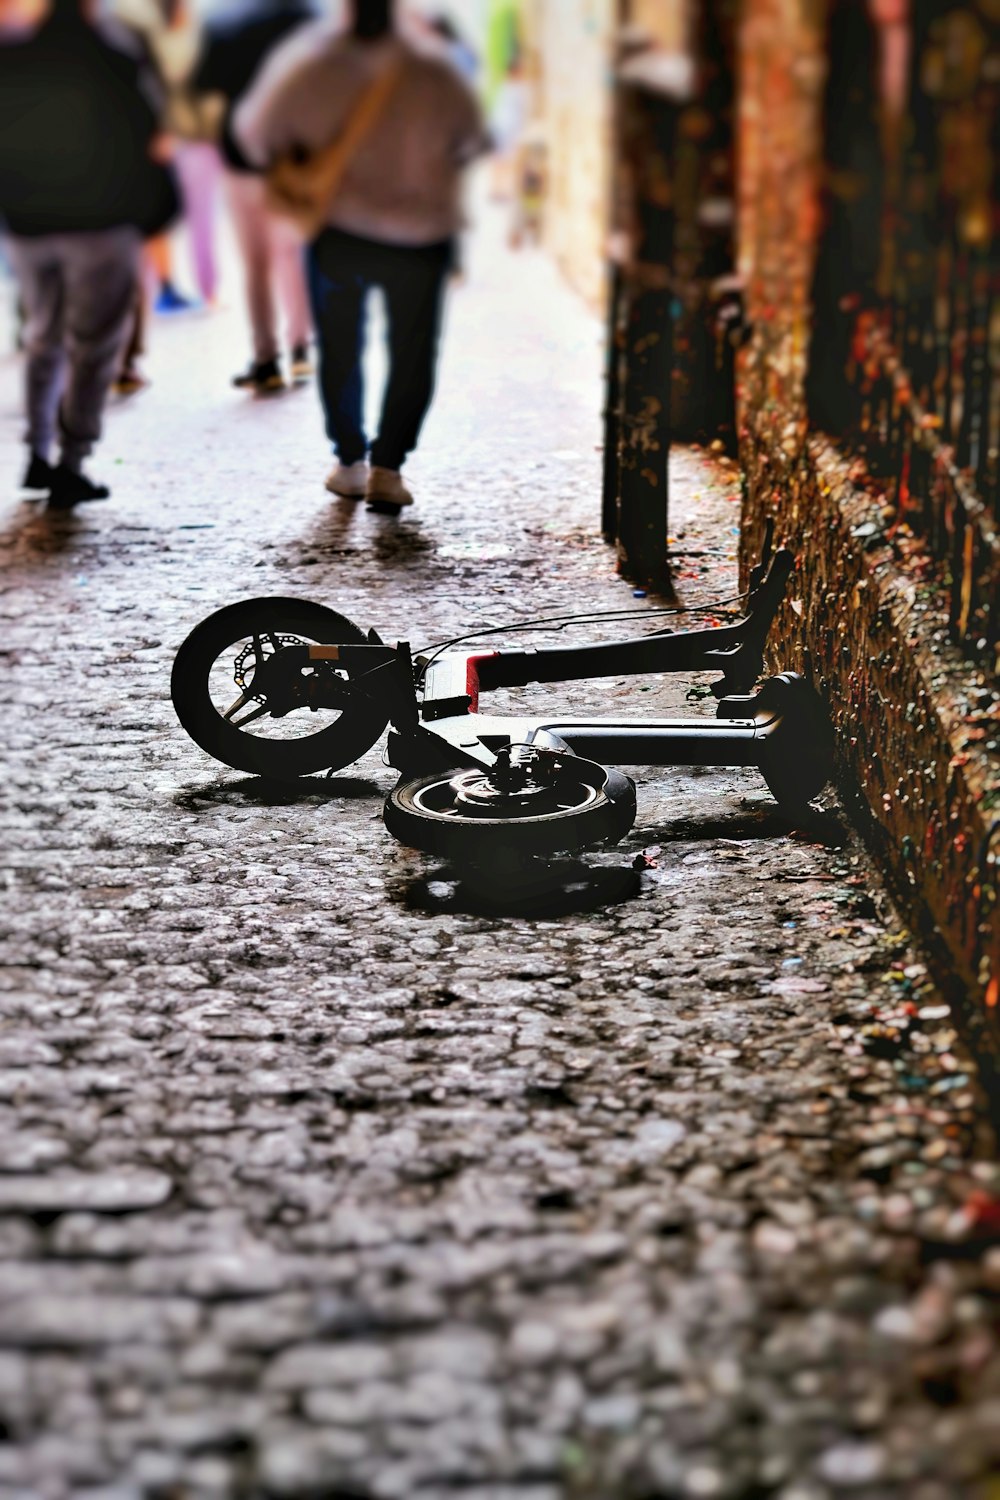 通りの真ん中で地面に横たわっている壊れた自転車